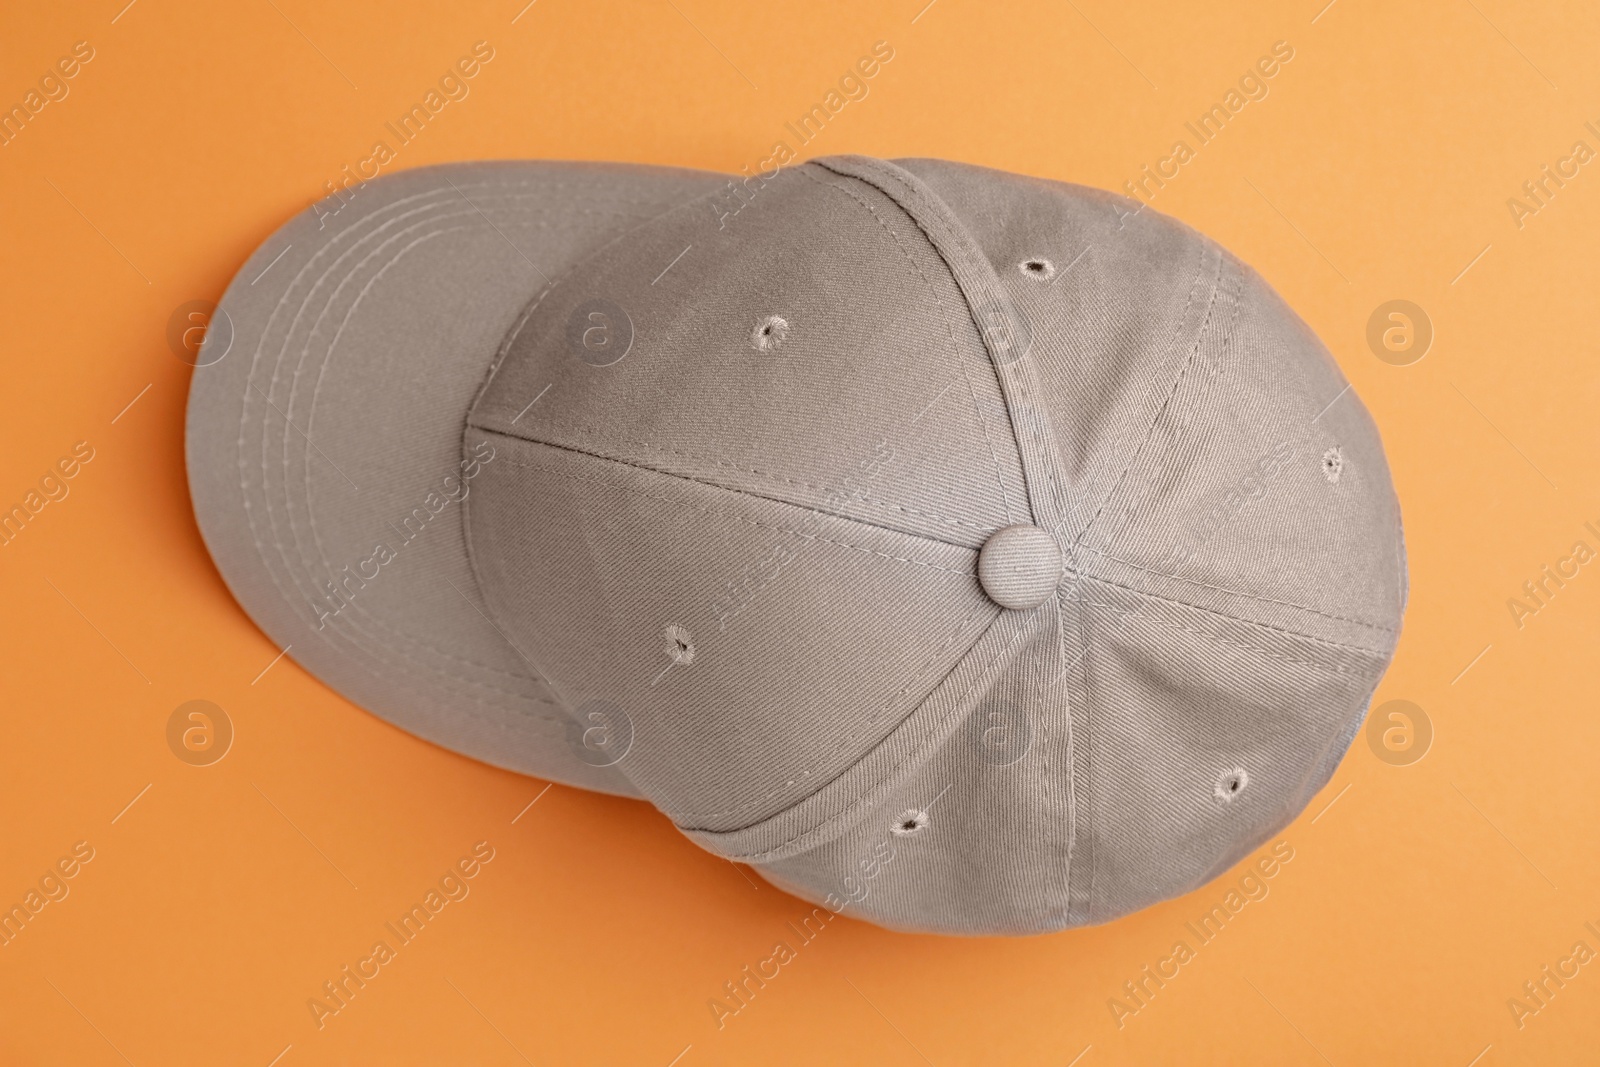 Photo of Stylish grey baseball cap on orange background, top view